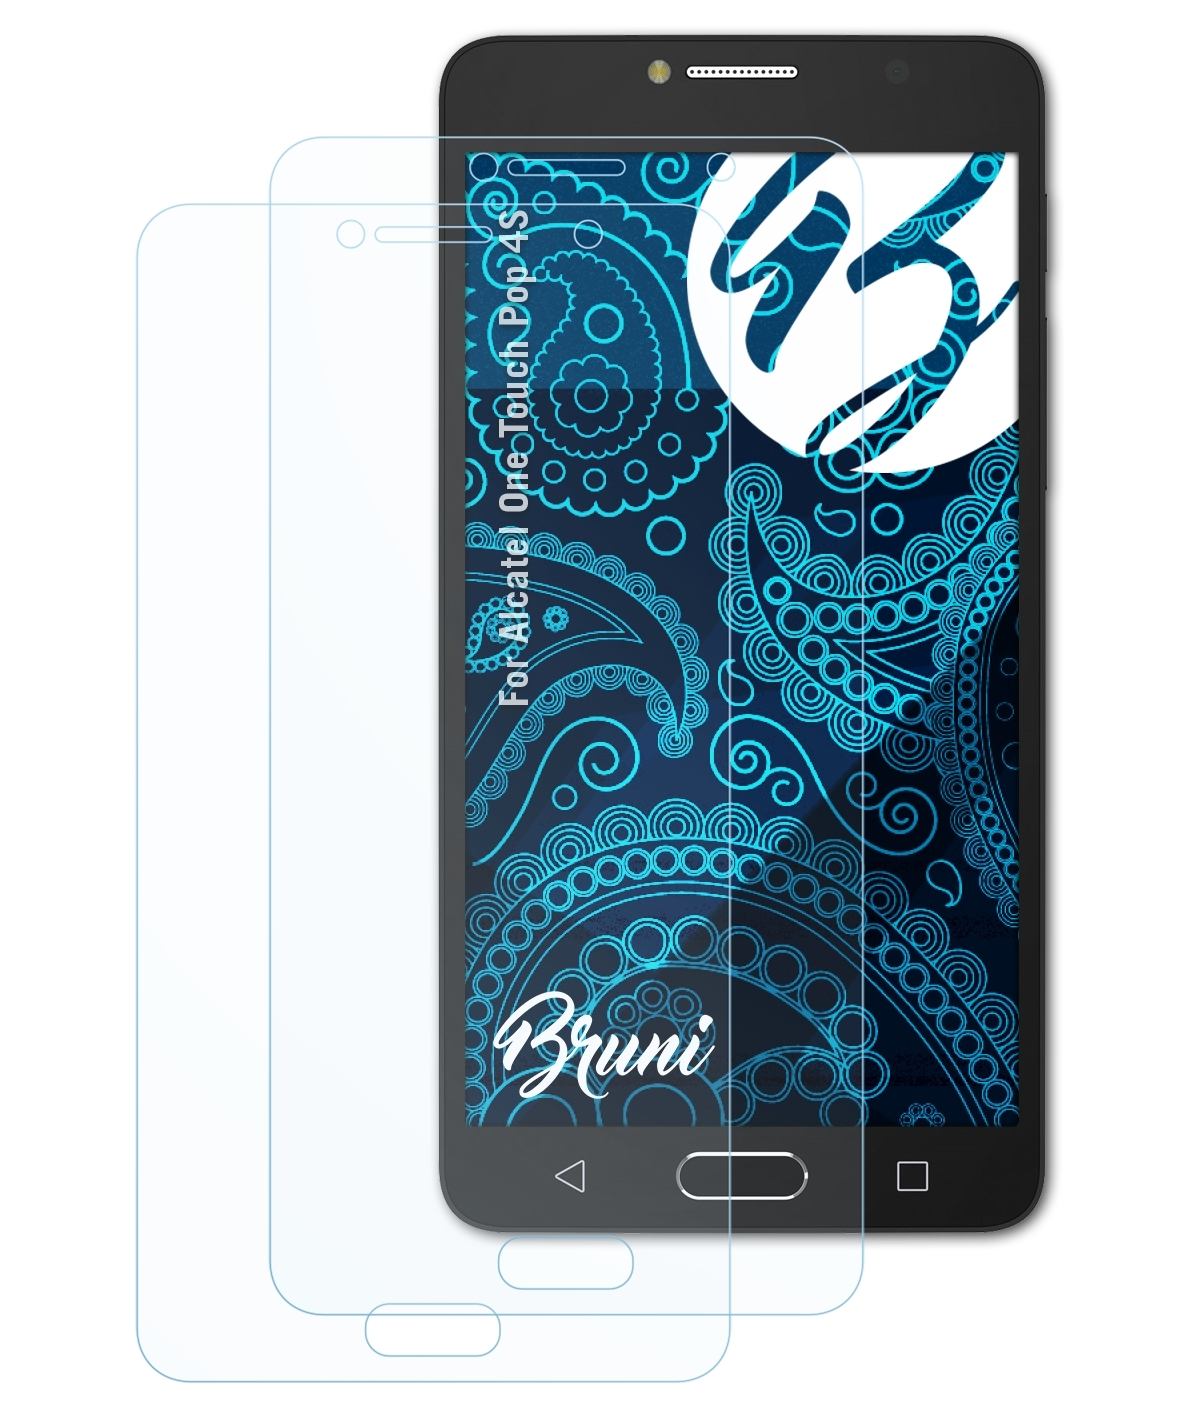 BRUNI 2x Basics-Clear Pop One 4S) Schutzfolie(für Alcatel Touch